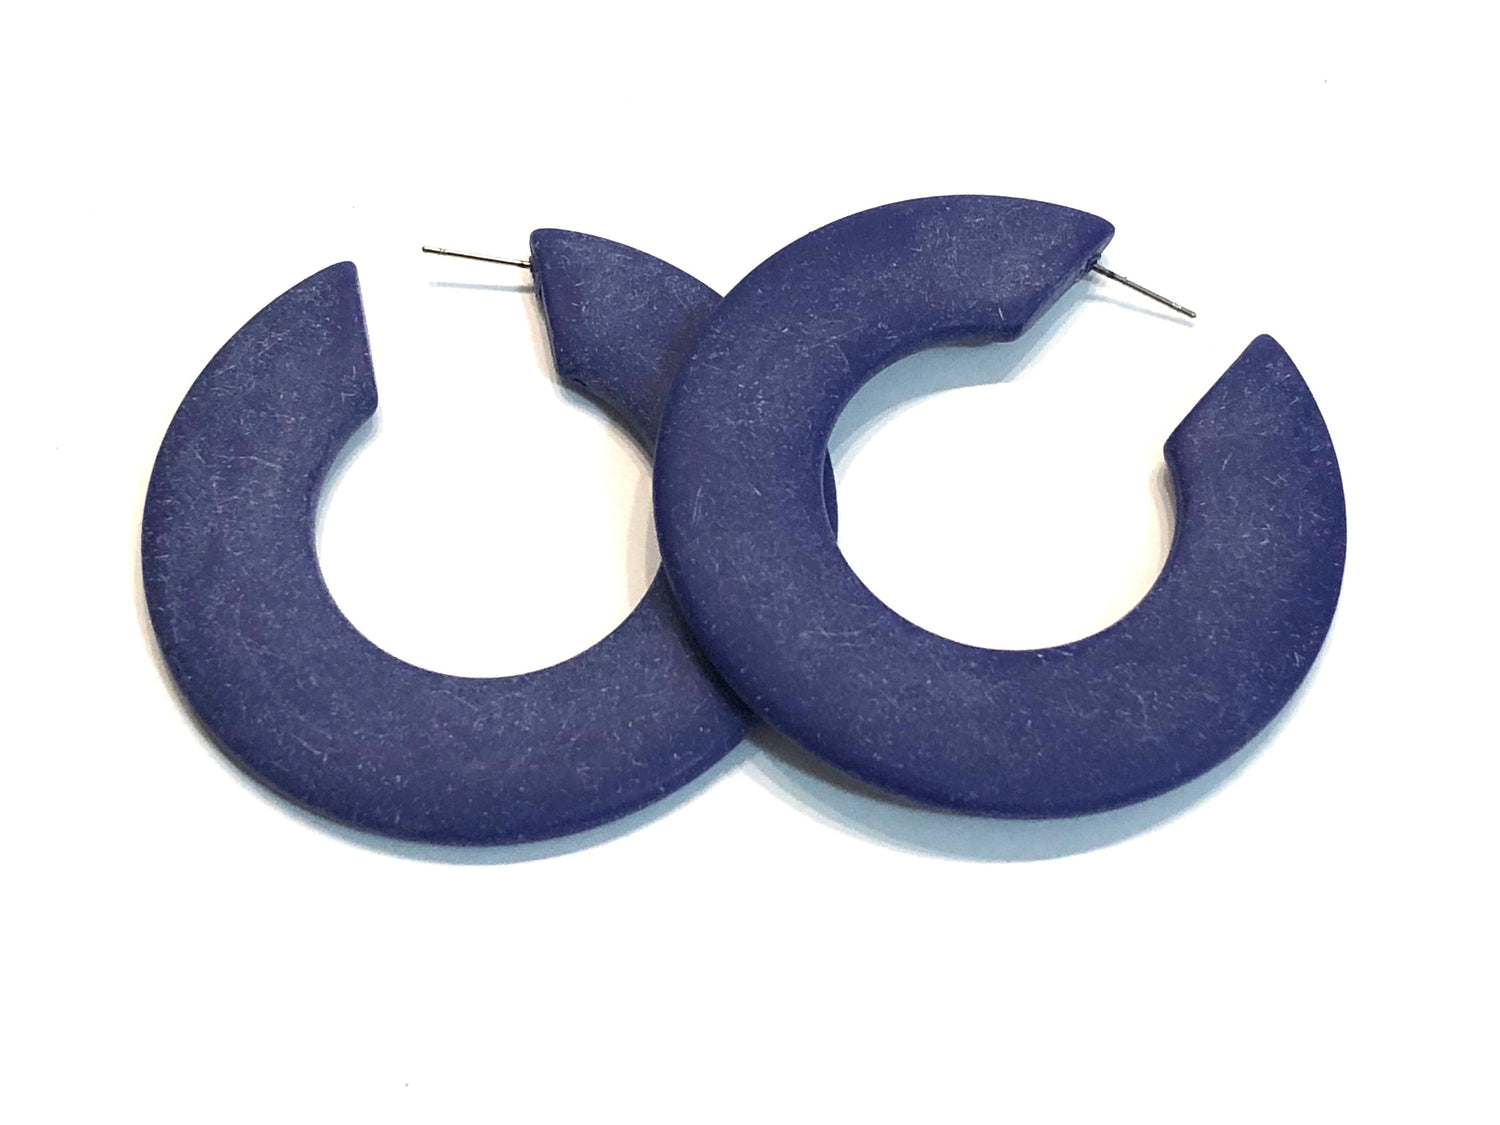 big navy blue earrings